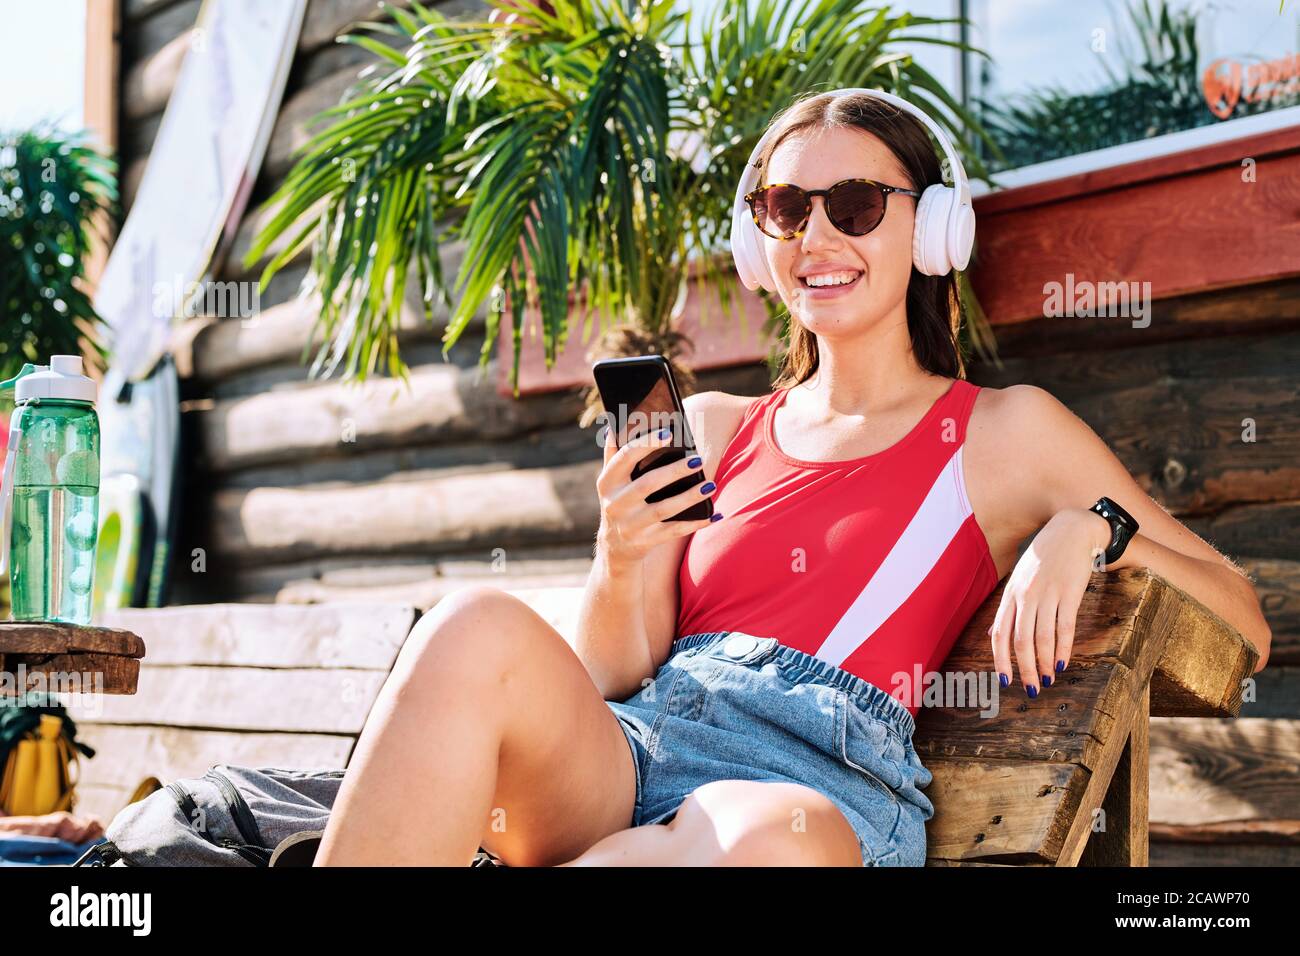 Jeune femme gaie dans un casque, des lunettes de soleil, une table de cuisson rouge et un short en denim Banque D'Images